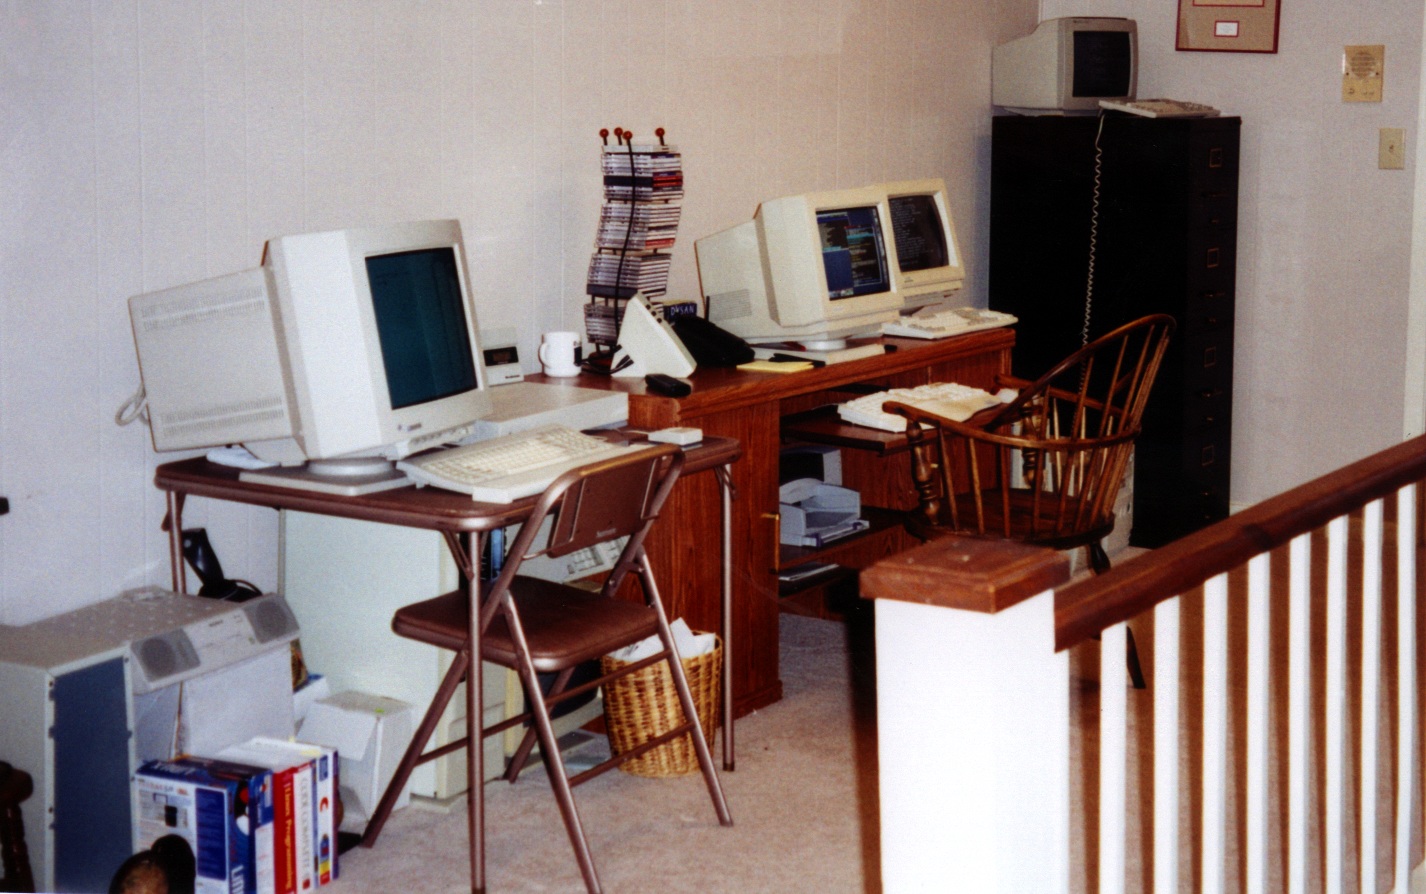 Playroom Computer Setup